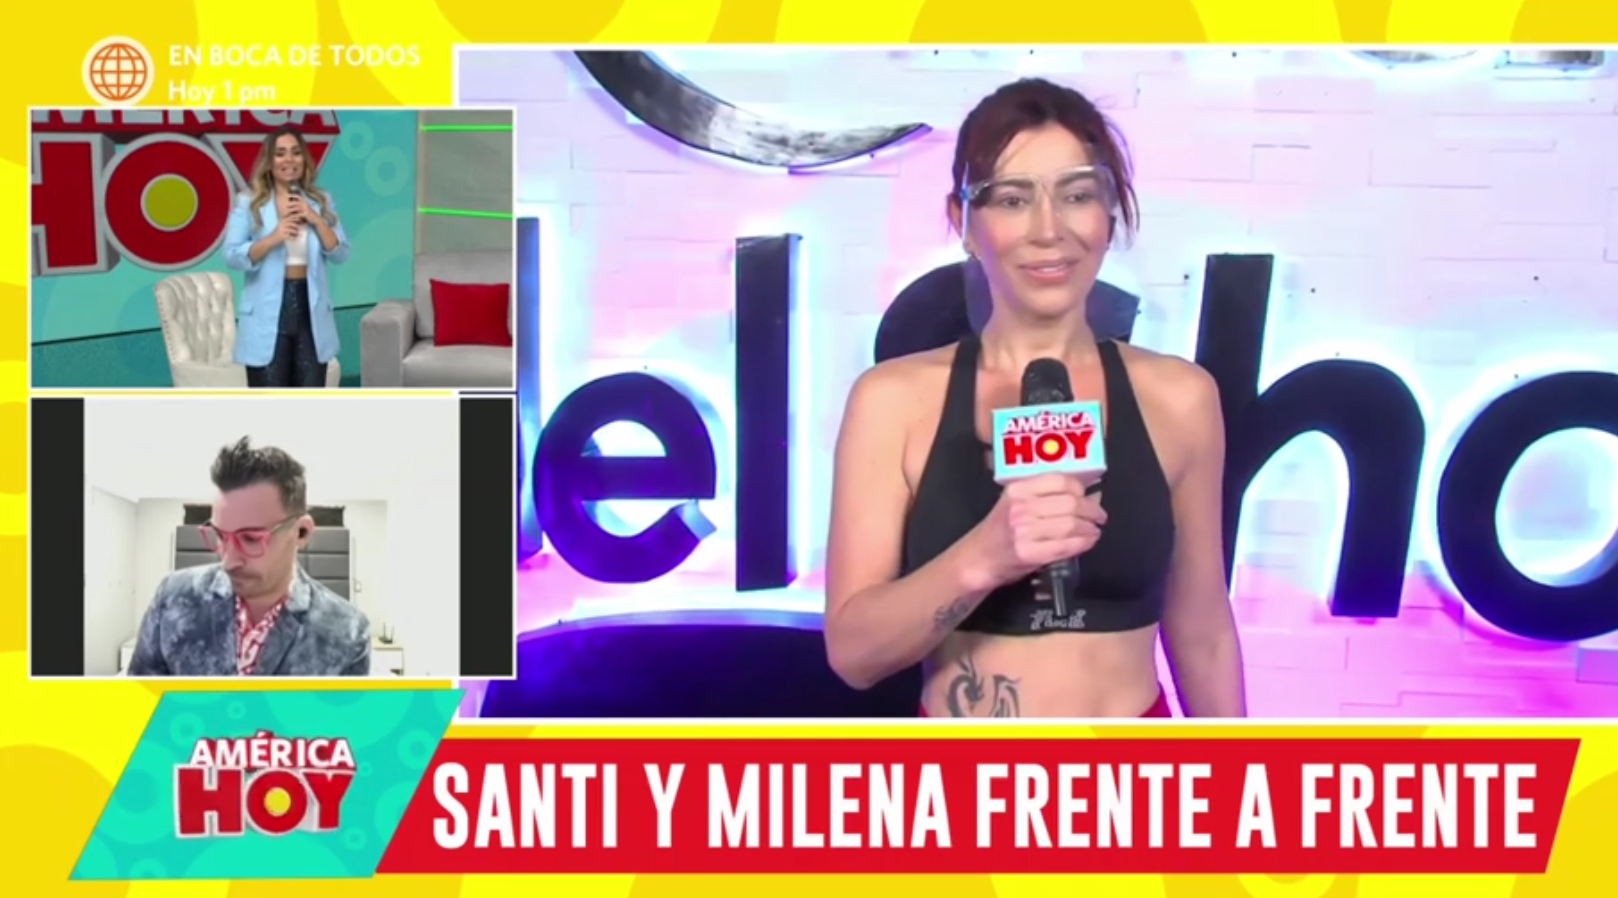 Milena Zárate se enfureció por las palabras de Santi Lesmes y abandonó la entrevista. Foto: captura/América Hoy